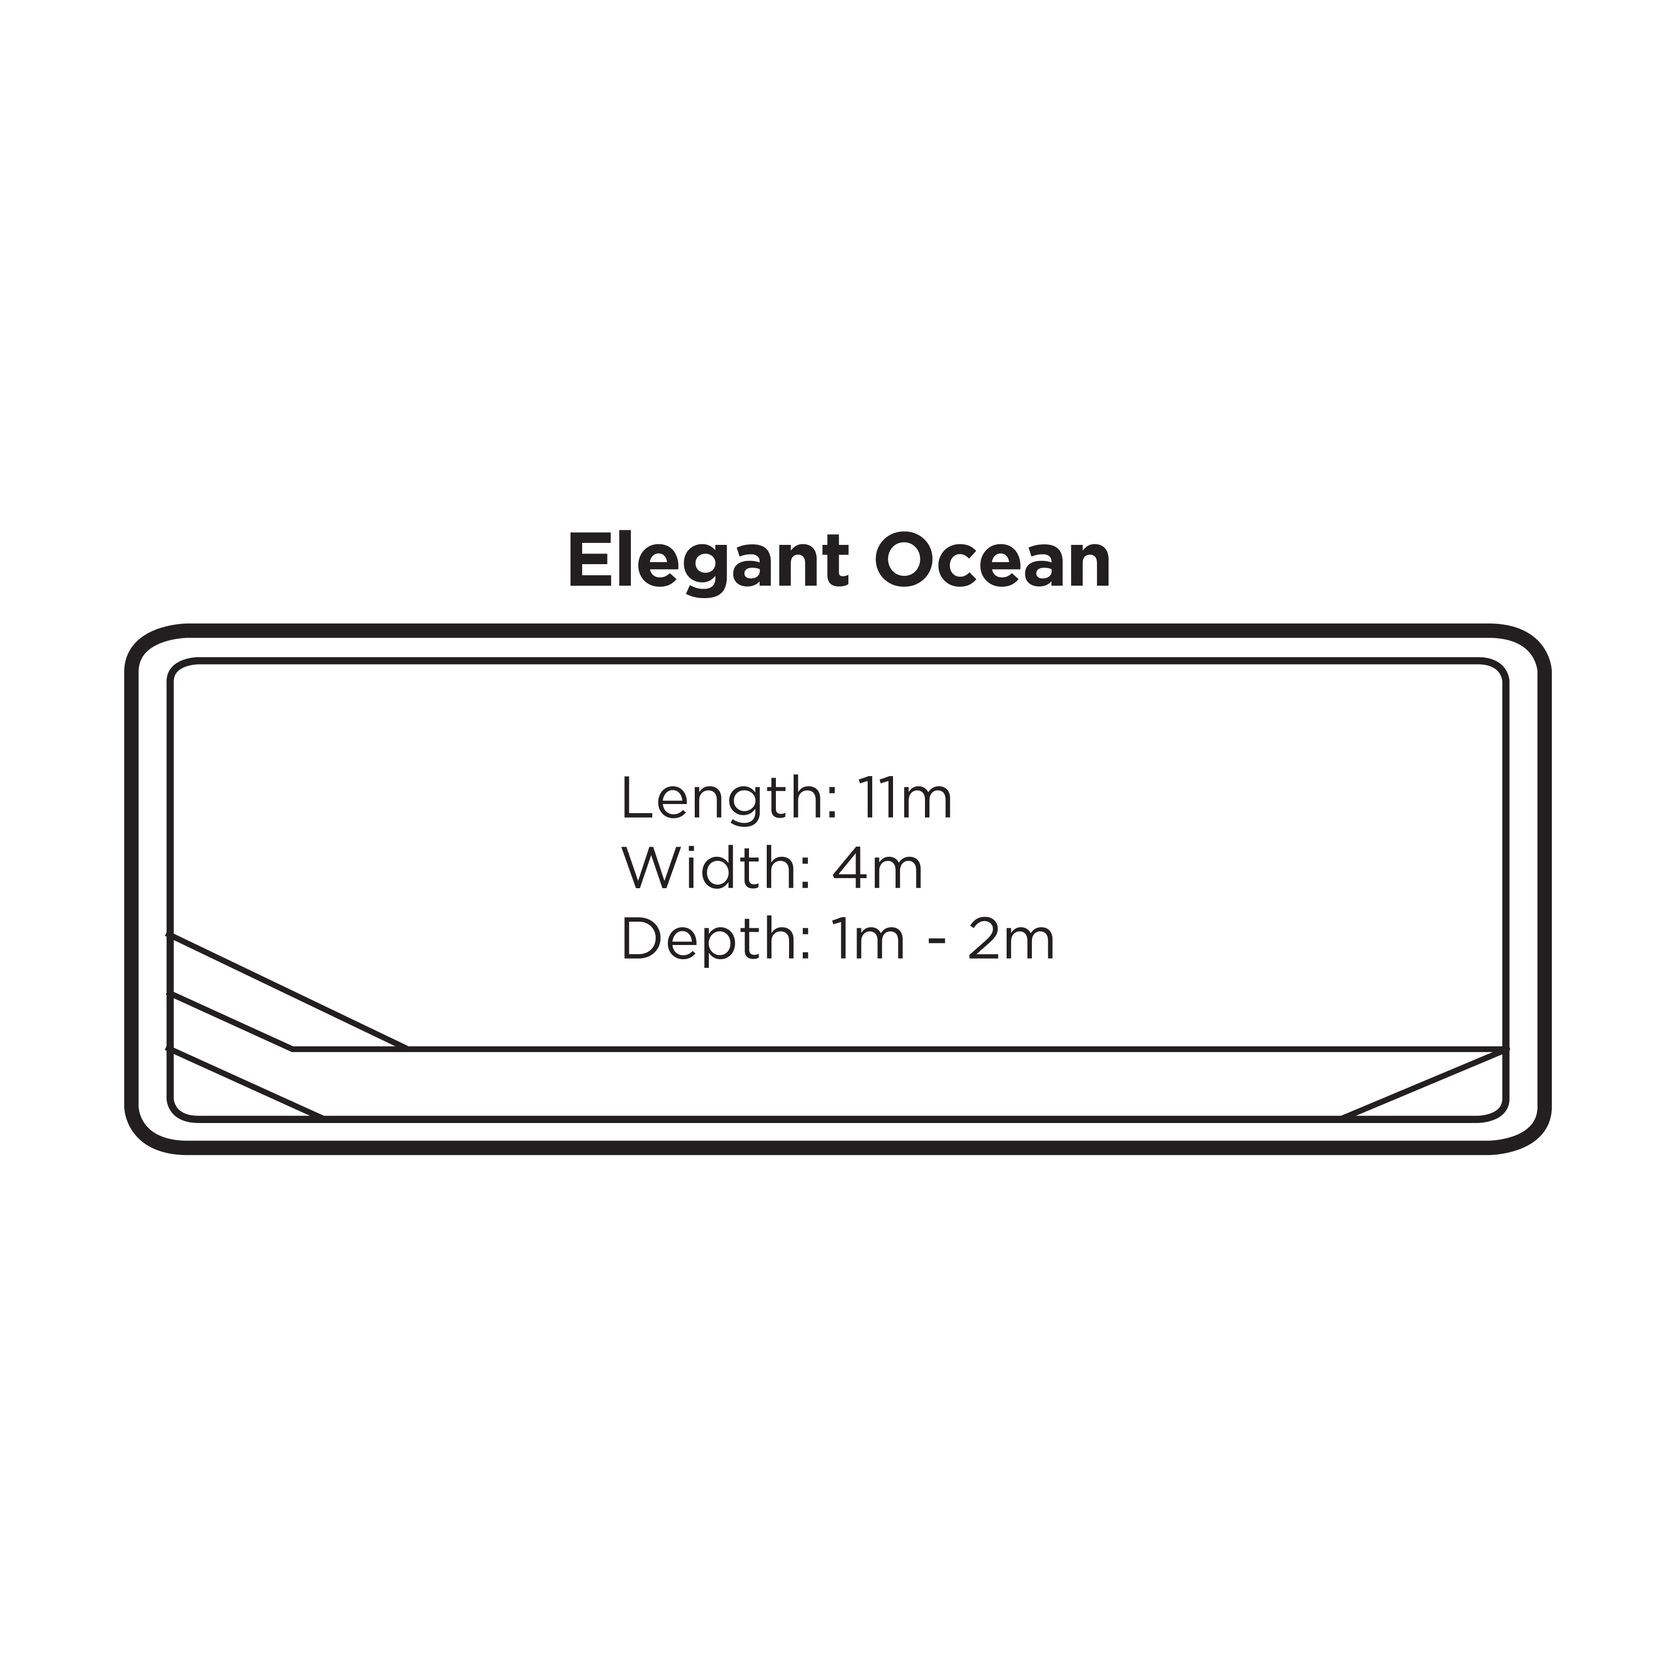 Elegant Ocean gallery detail image